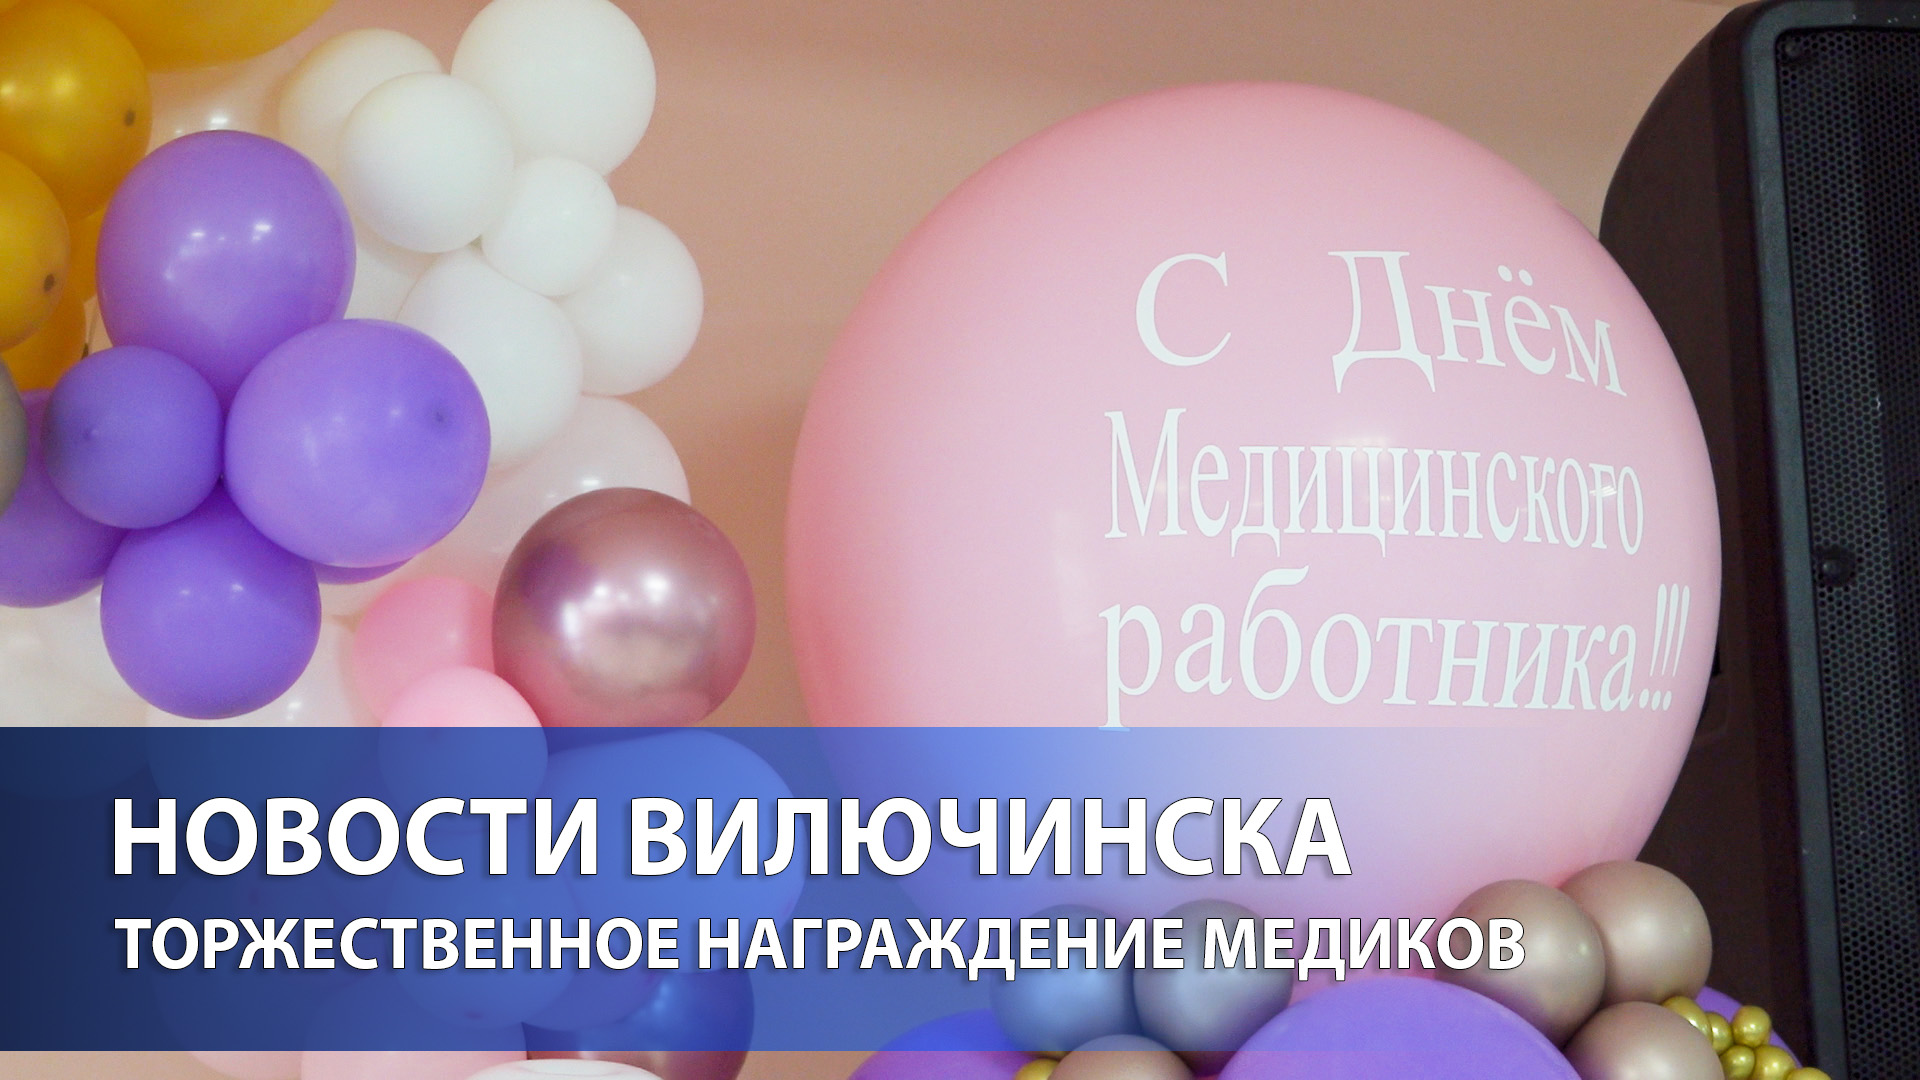 В Вилючинске прошло торжественное награждение медиков в связи с их профессиональным праздником